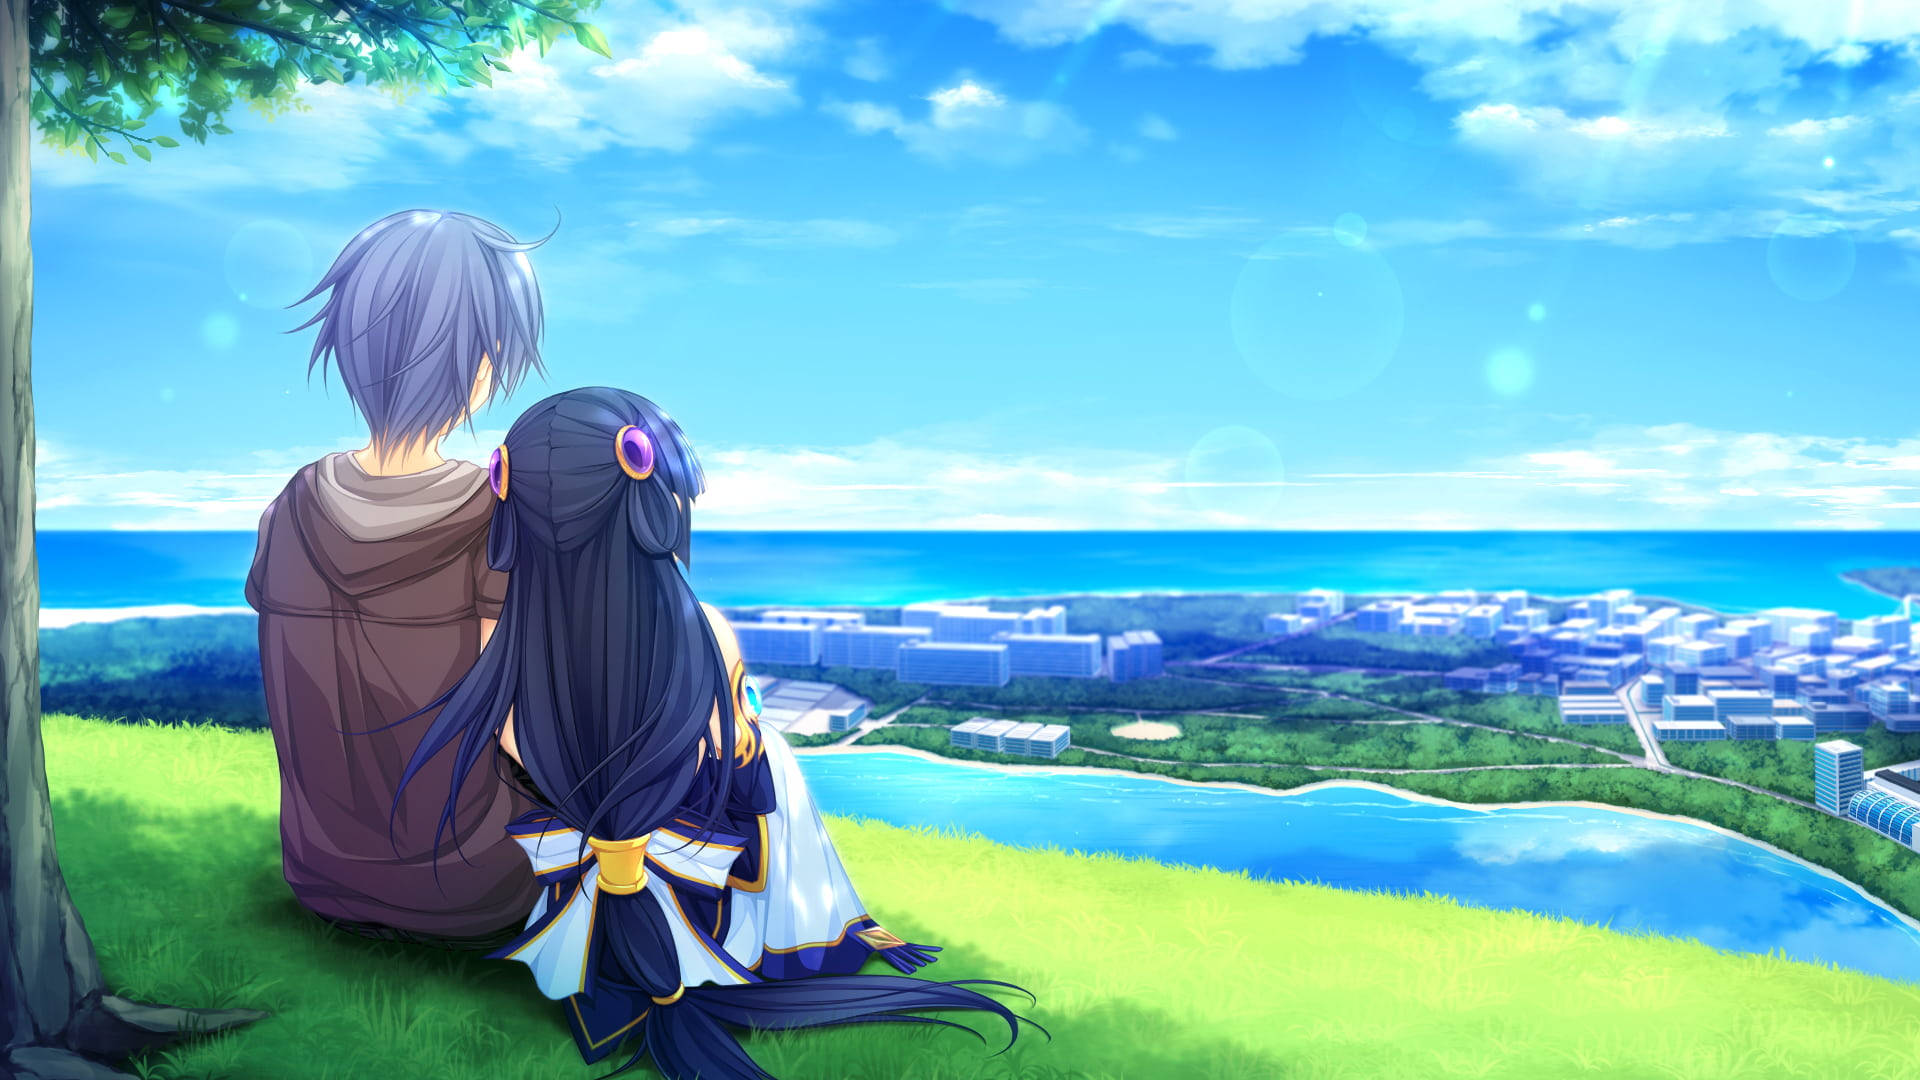 Lovely Aesthetic Anime Couple Digital Art Background